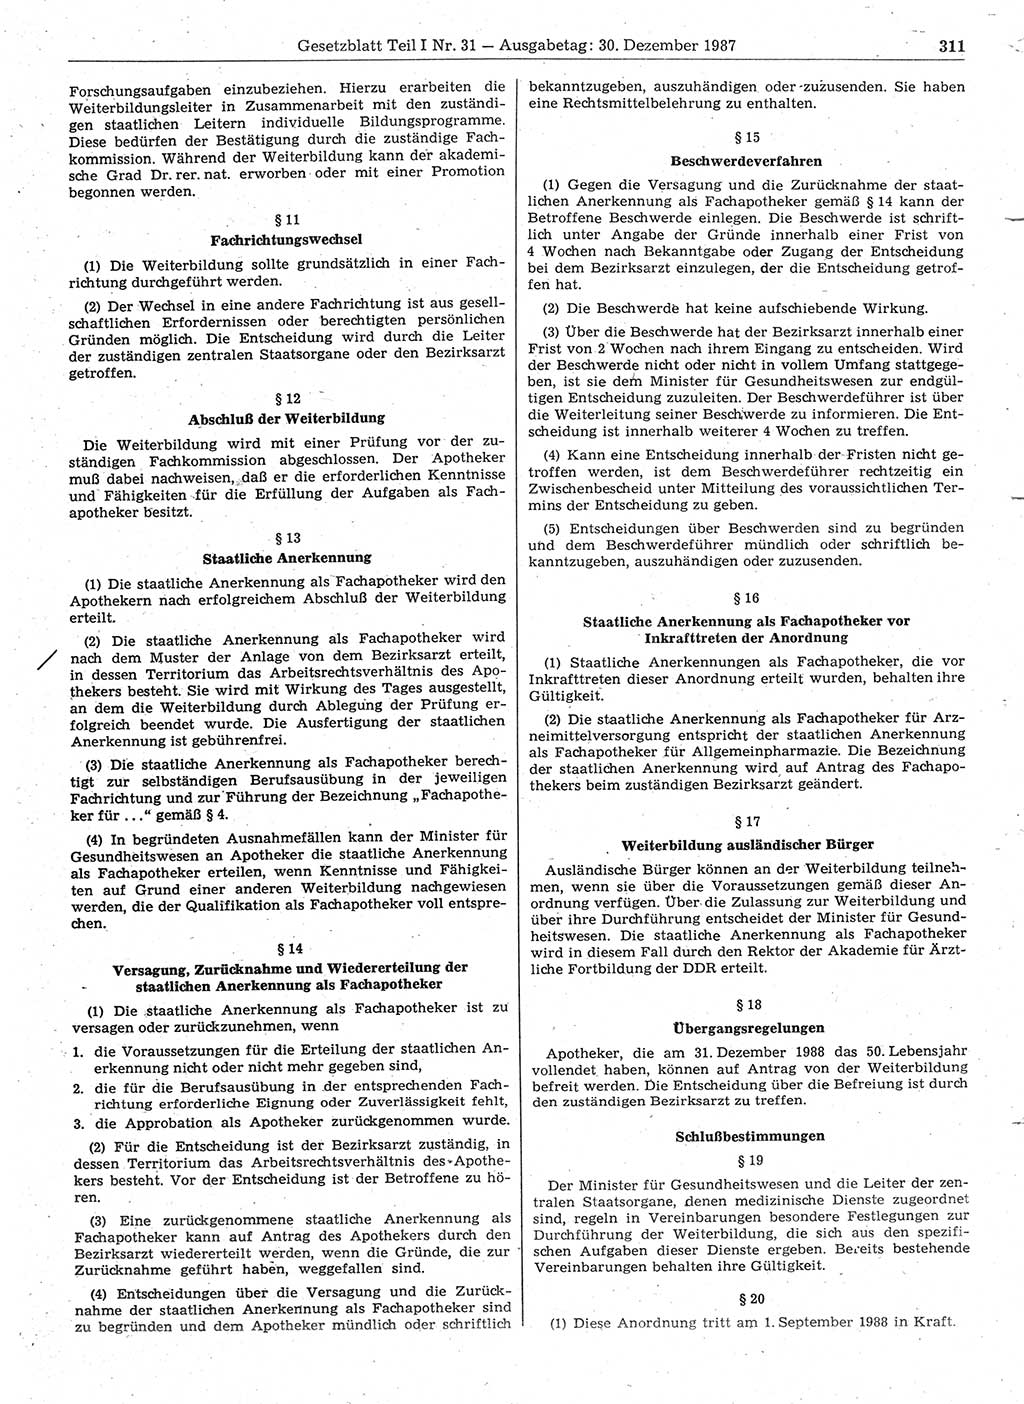 Gesetzblatt (GBl.) der Deutschen Demokratischen Republik (DDR) Teil Ⅰ 1987, Seite 311 (GBl. DDR Ⅰ 1987, S. 311)